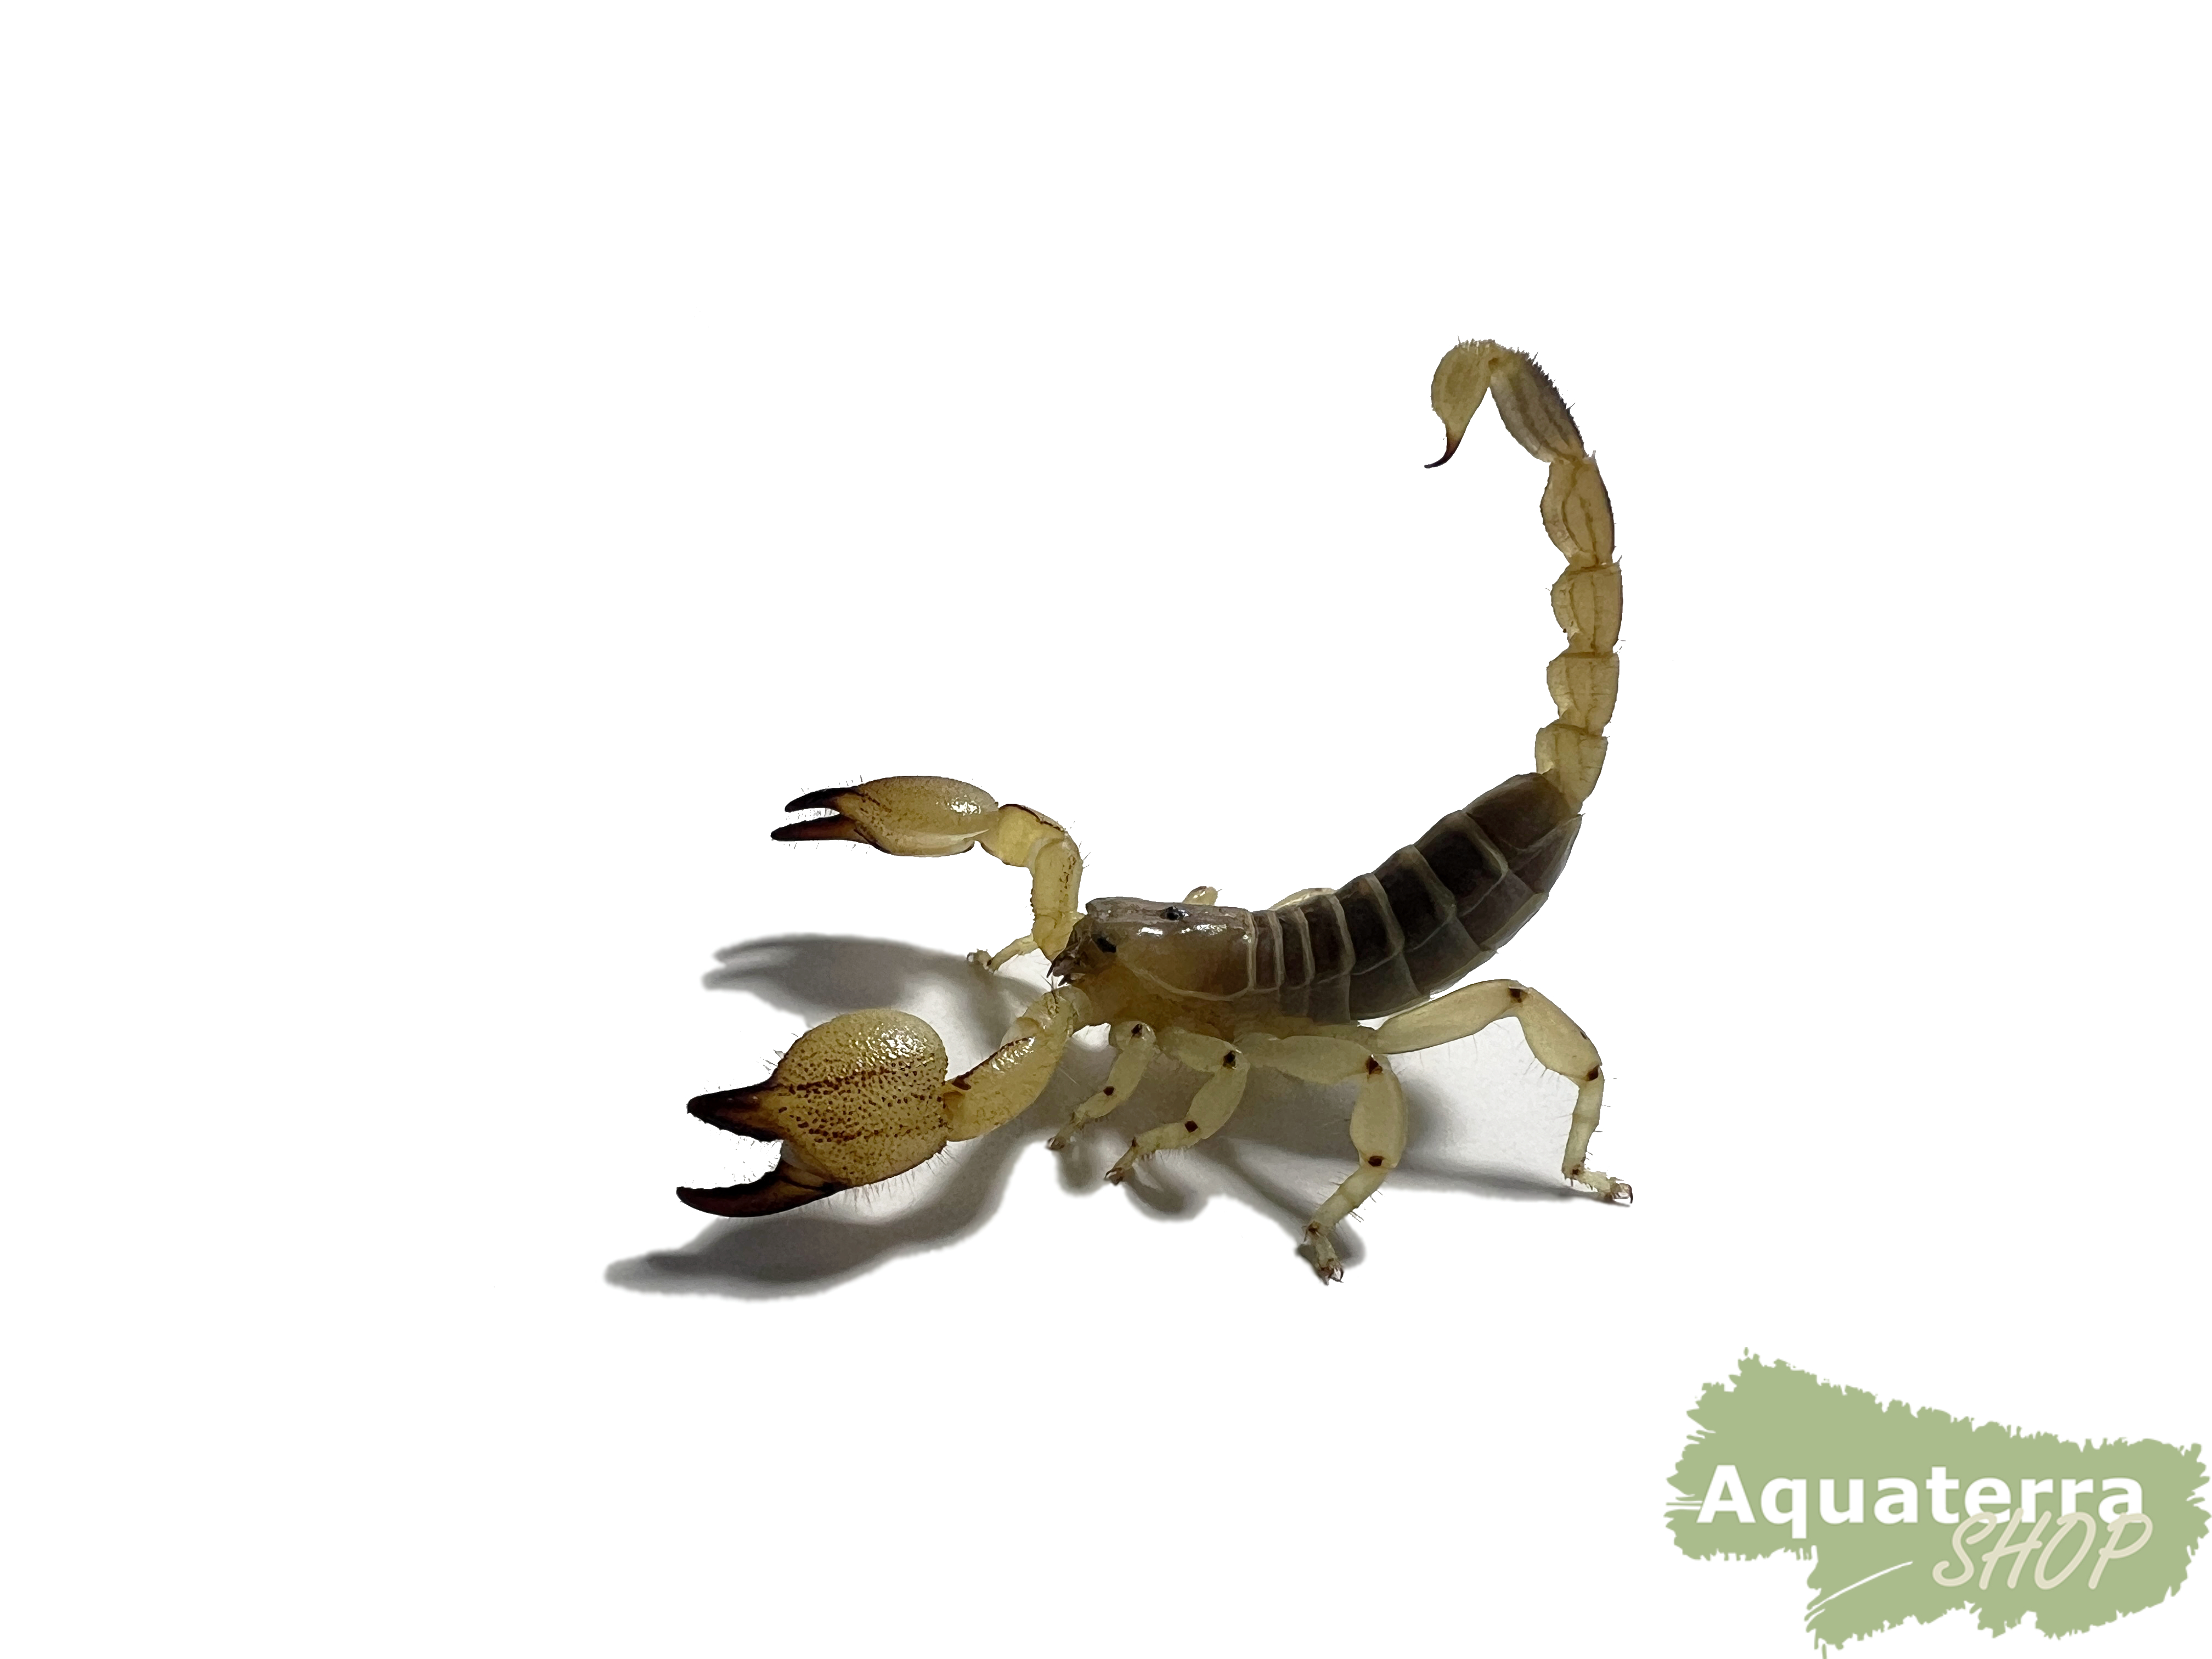  Scorpio maurus, Maurischer Skorpion